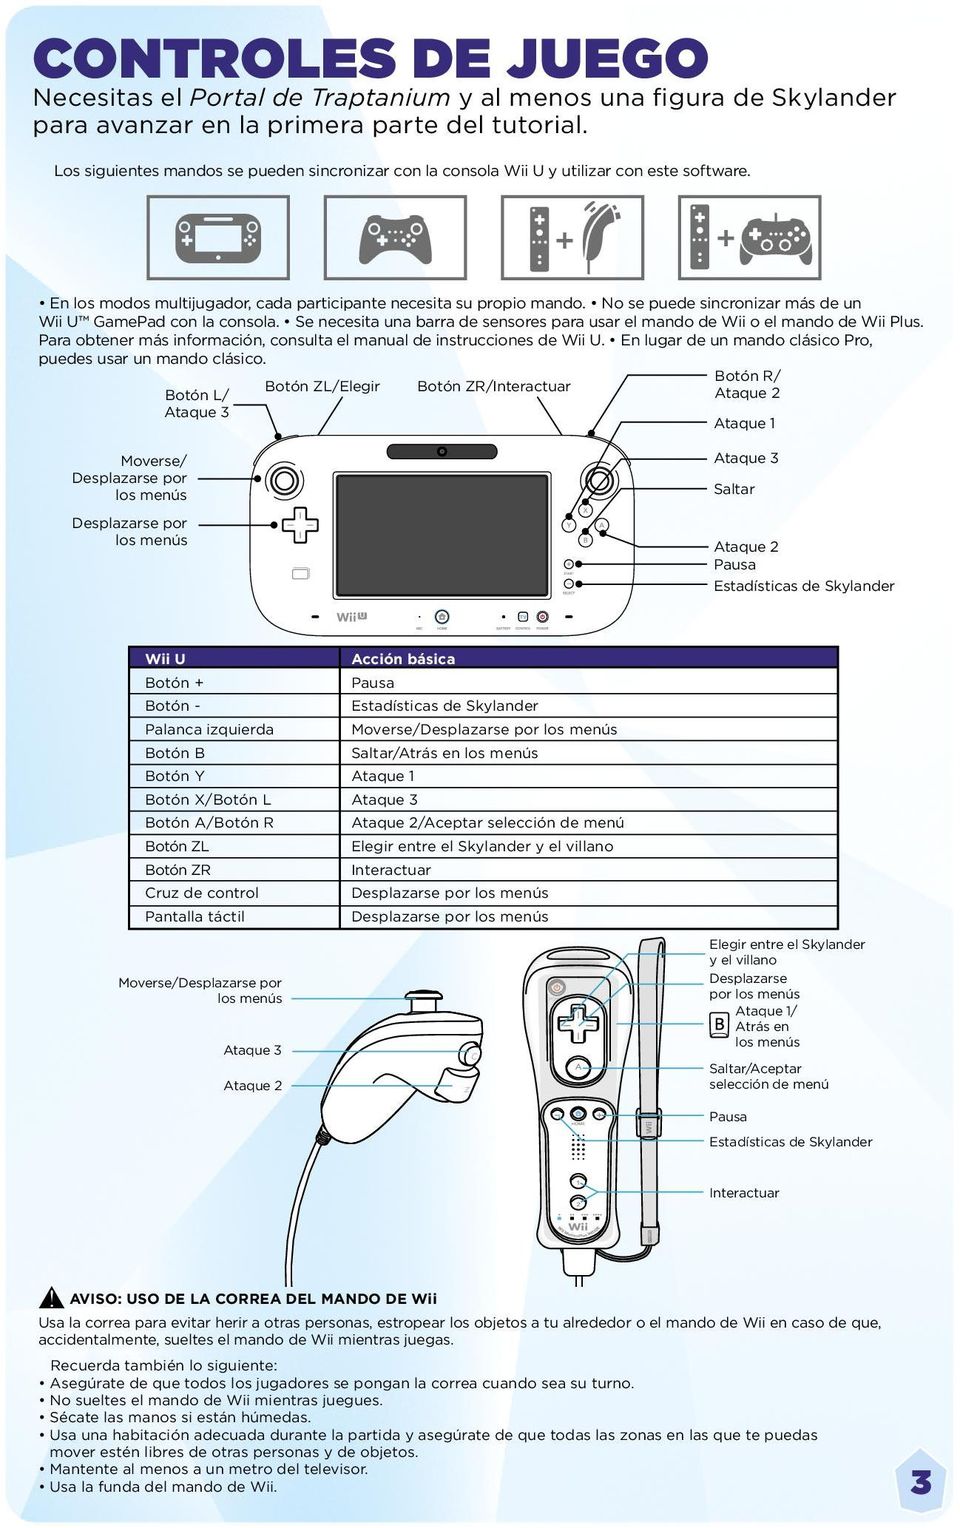 No se puede sincronizar más de un Wii U GamePad con la consola. Se necesita una barra de sensores para usar el mando de Wii o el mando de Wii Plus.